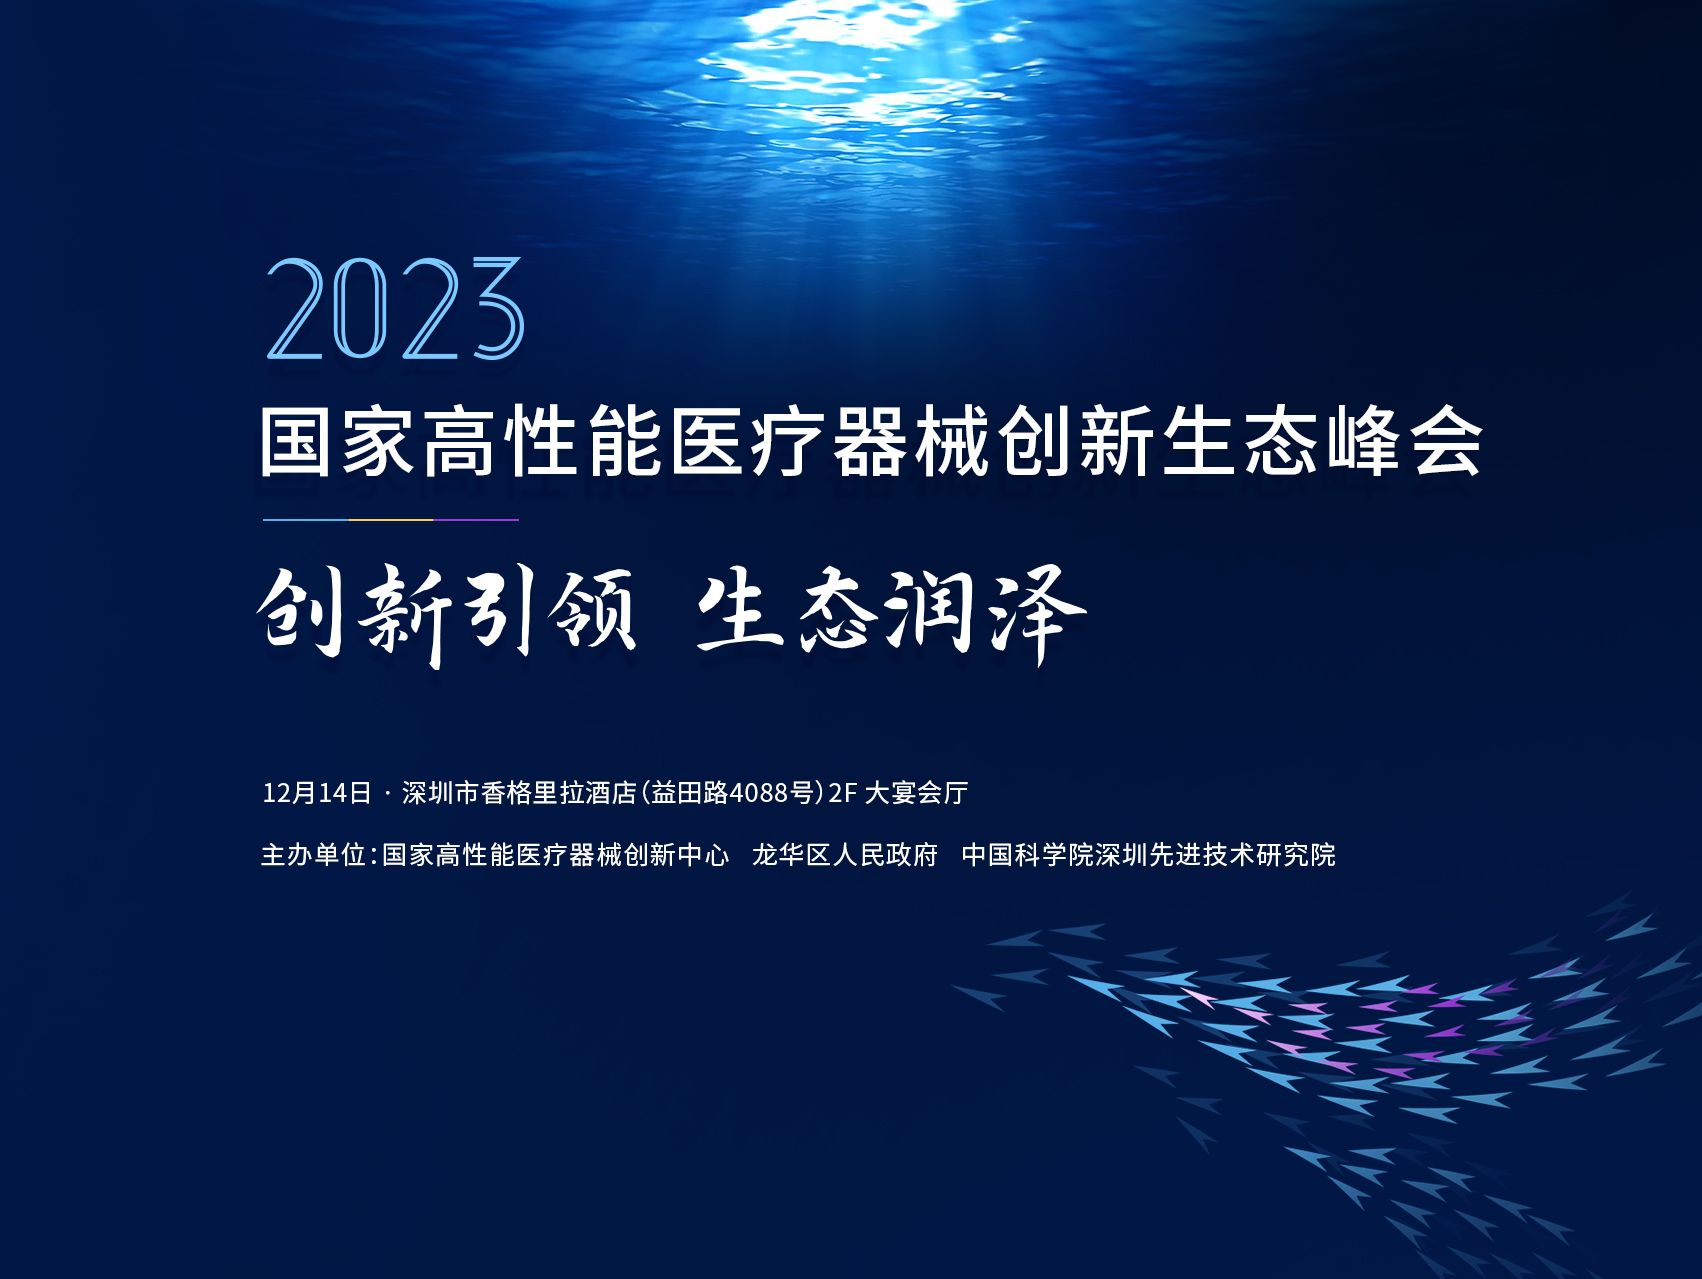 2023国家高性能医疗器械创新生态峰会即将在深举办